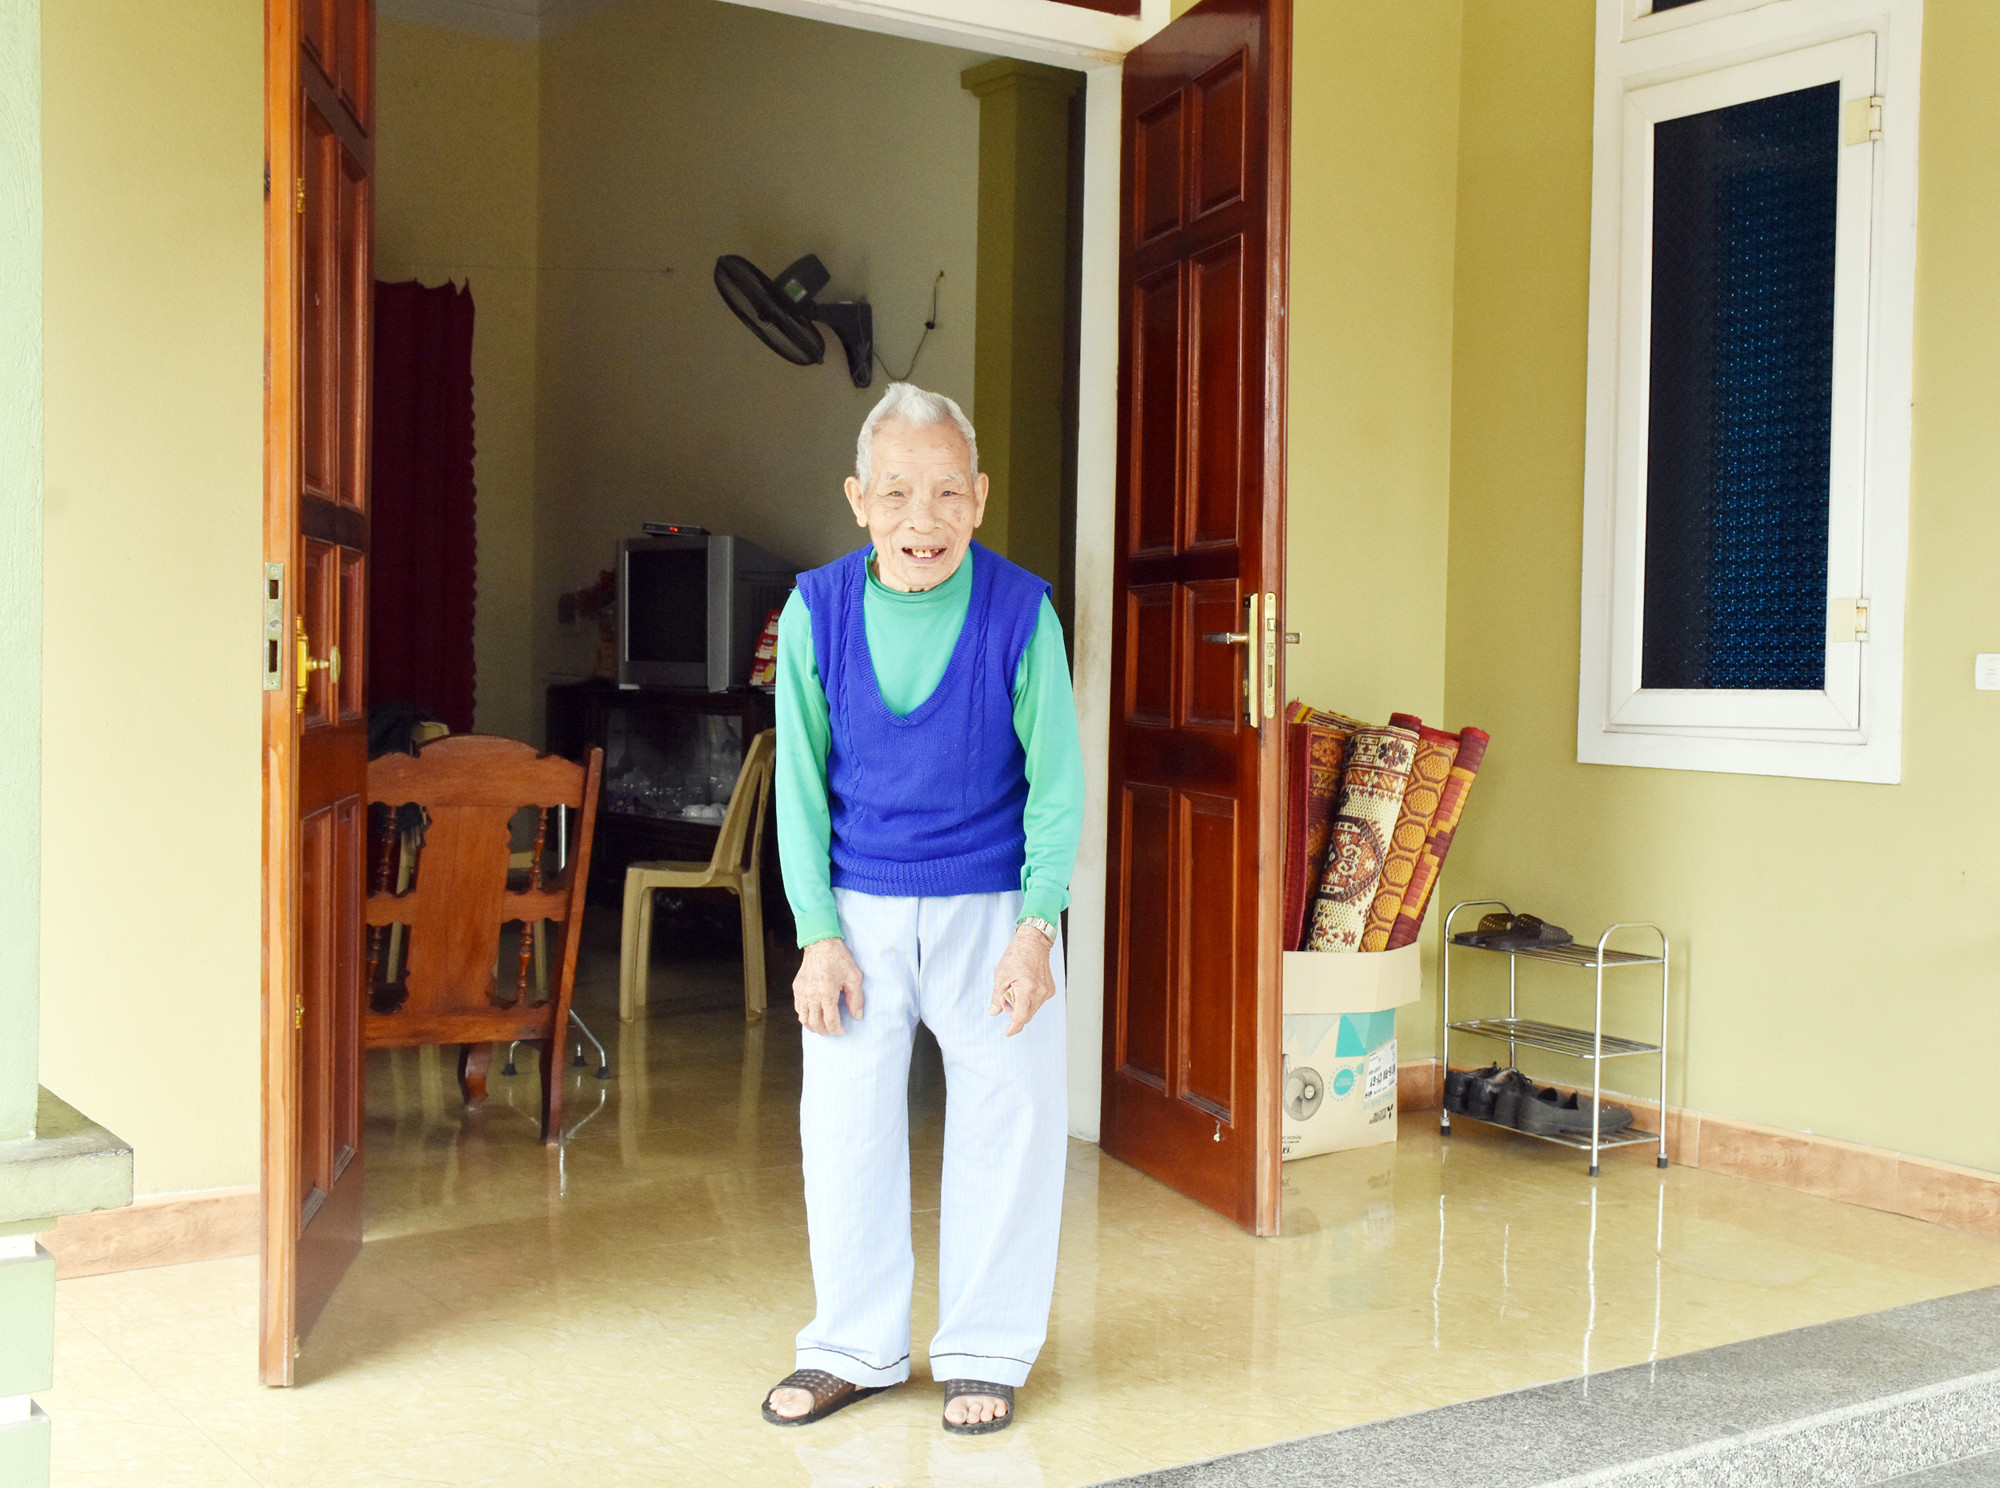 1.Bước sang tuổi 103, cụ Hoàng Văn Bàng vẫn đi lại trong nhà, trí nhớ vẫn minh mẫn. Ảnh: Công Kiên